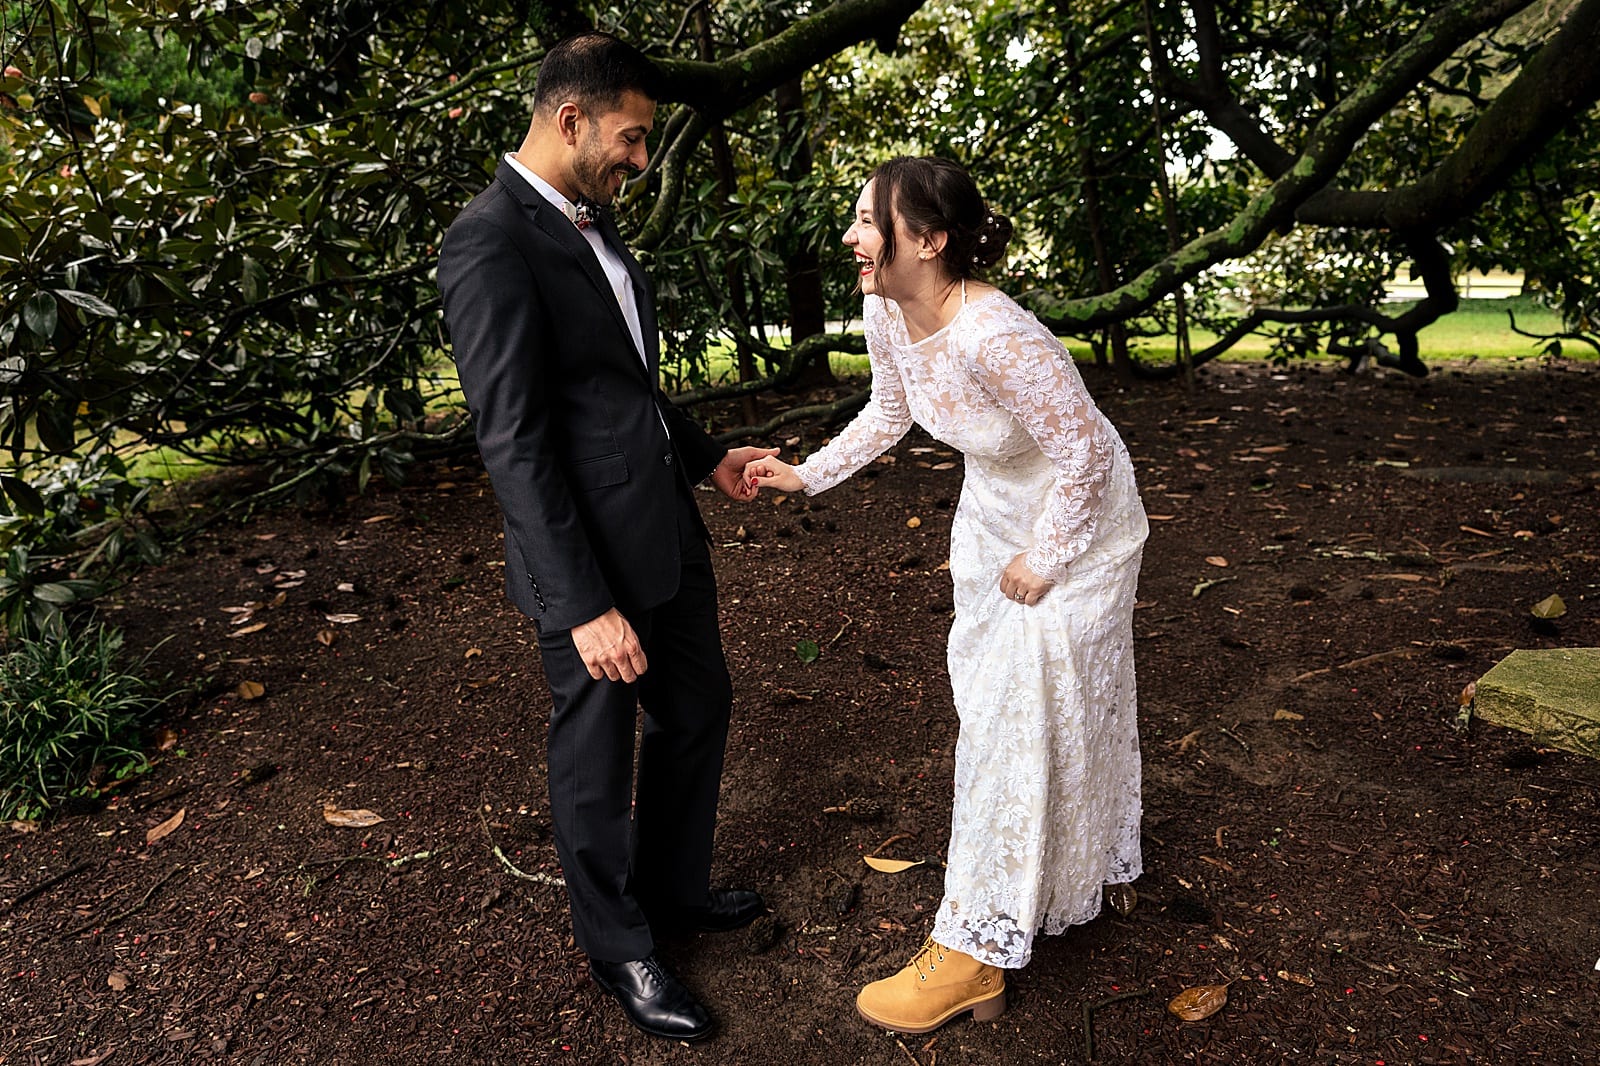 Arrowhead Inn wedding - first look under the trees